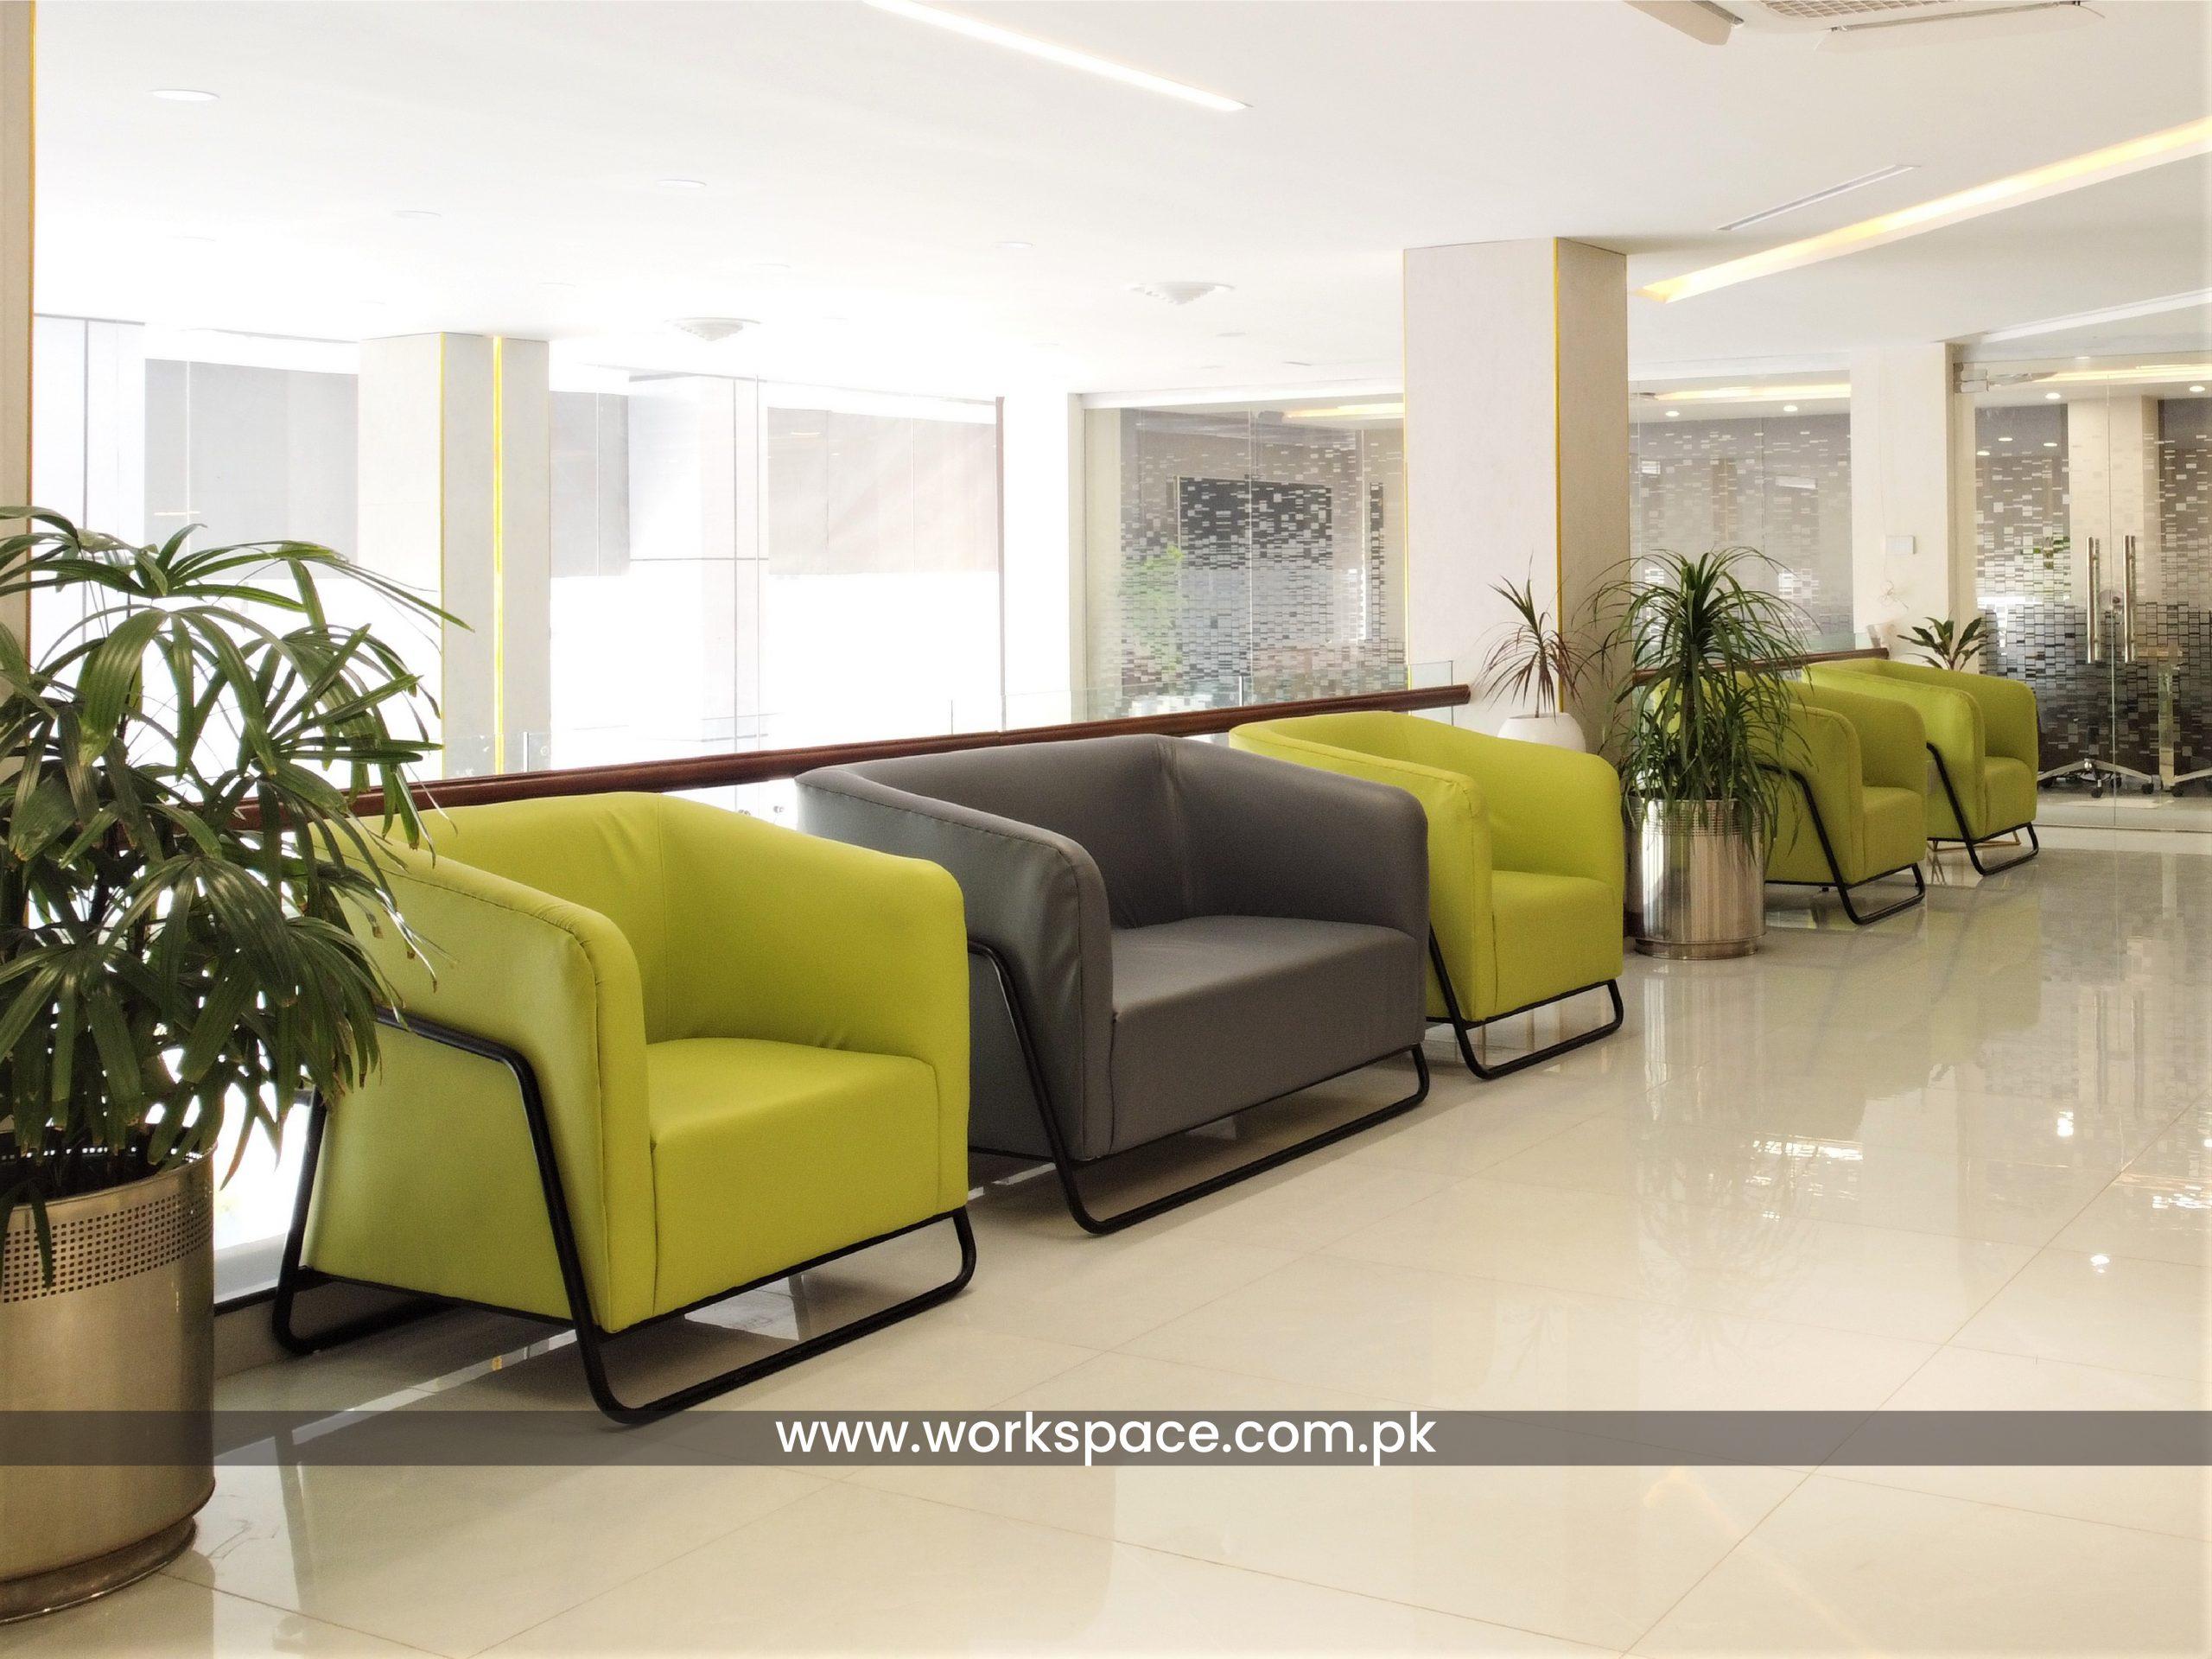 Sofa furniture design - Office Furniture